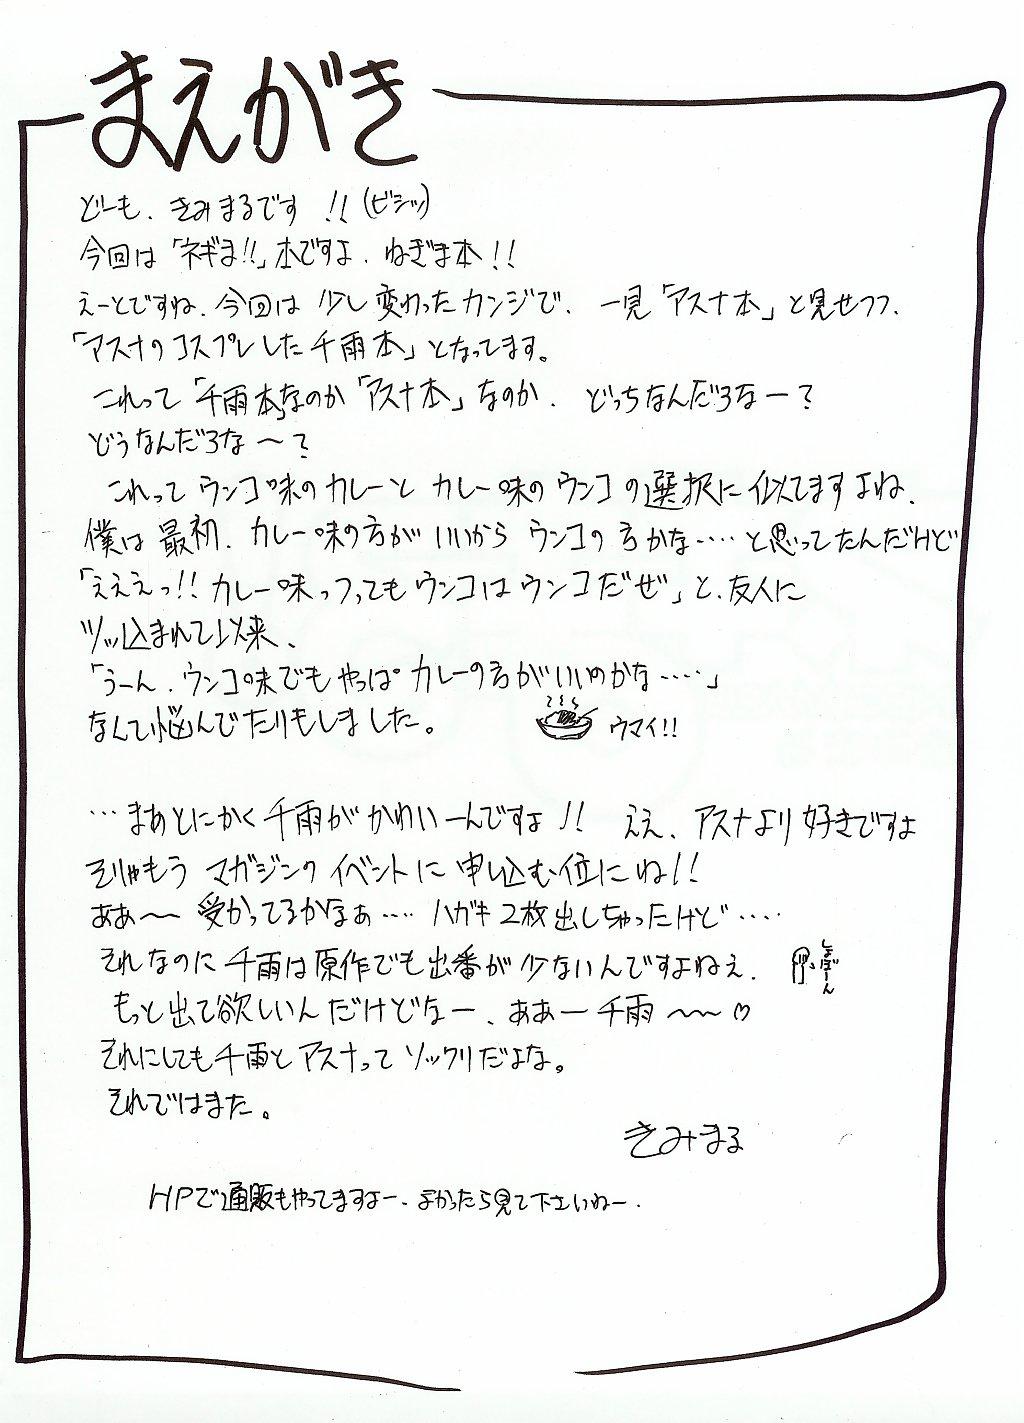 Story Negimaru! - Mahou sensei negima Mamadas - Page 3